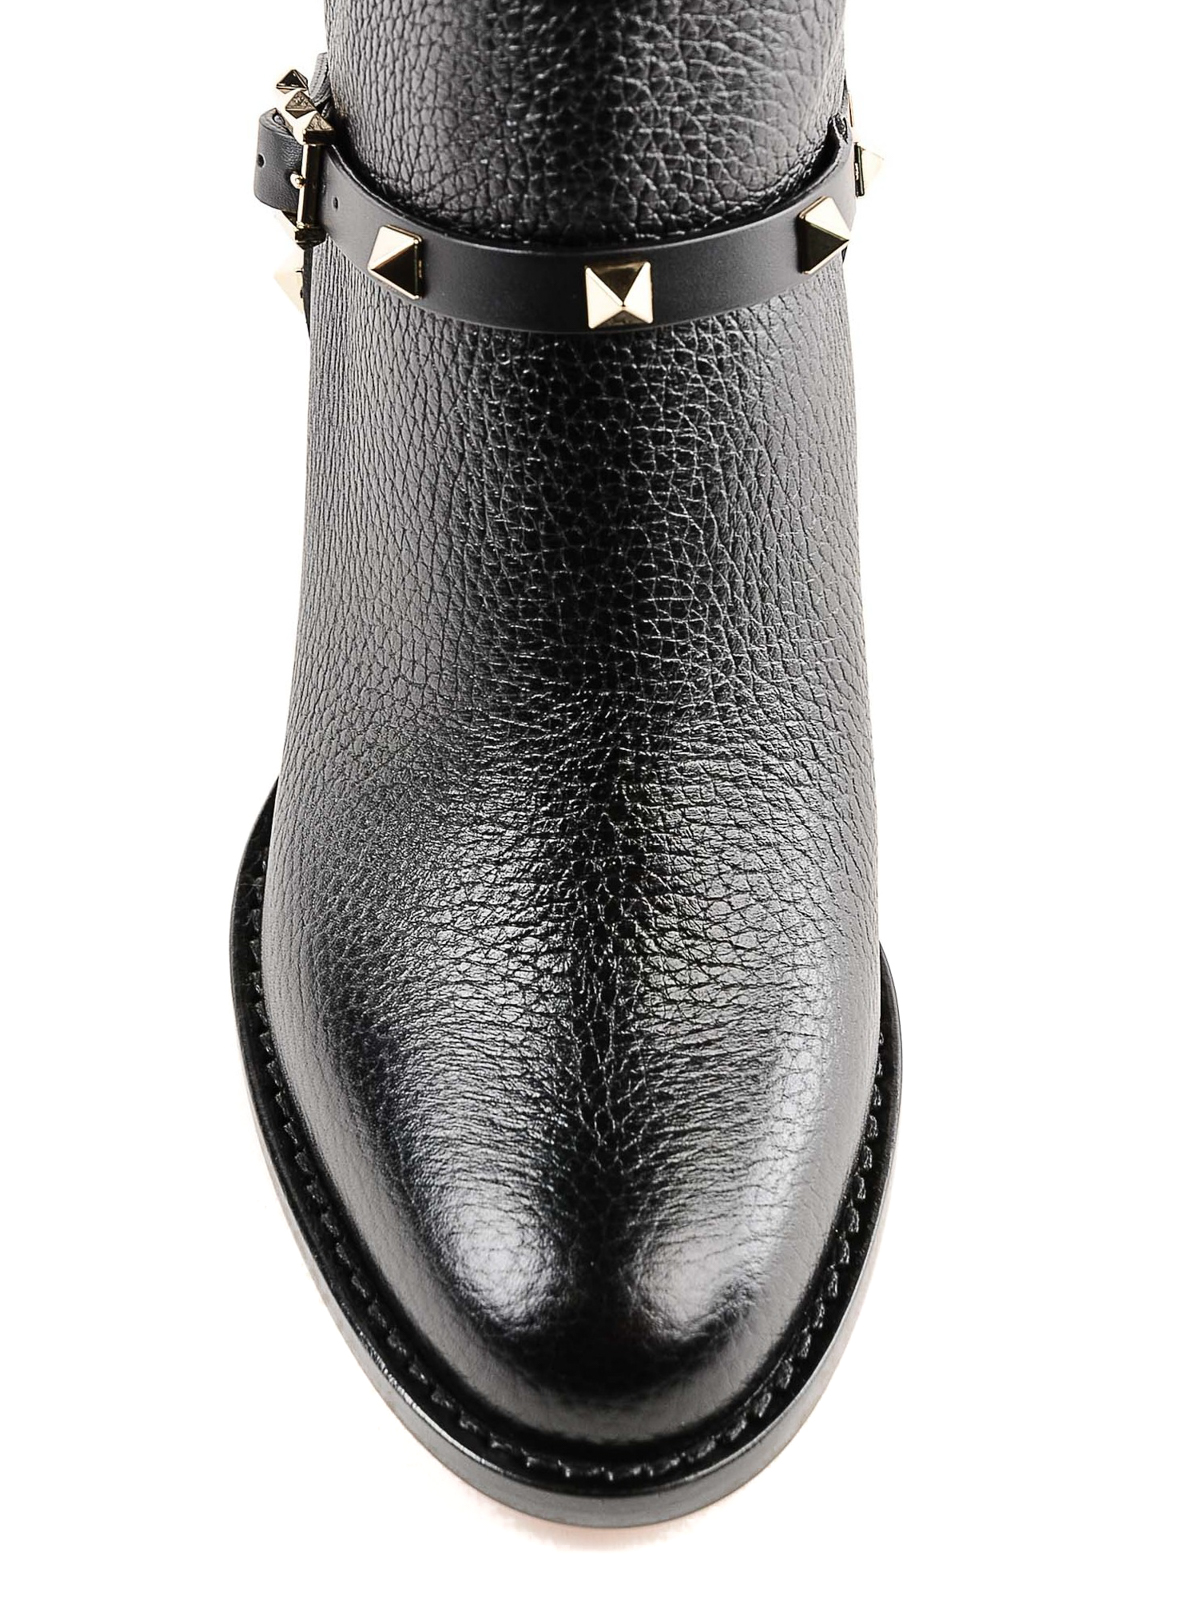 valentino garavani rockstud leather ankle boots